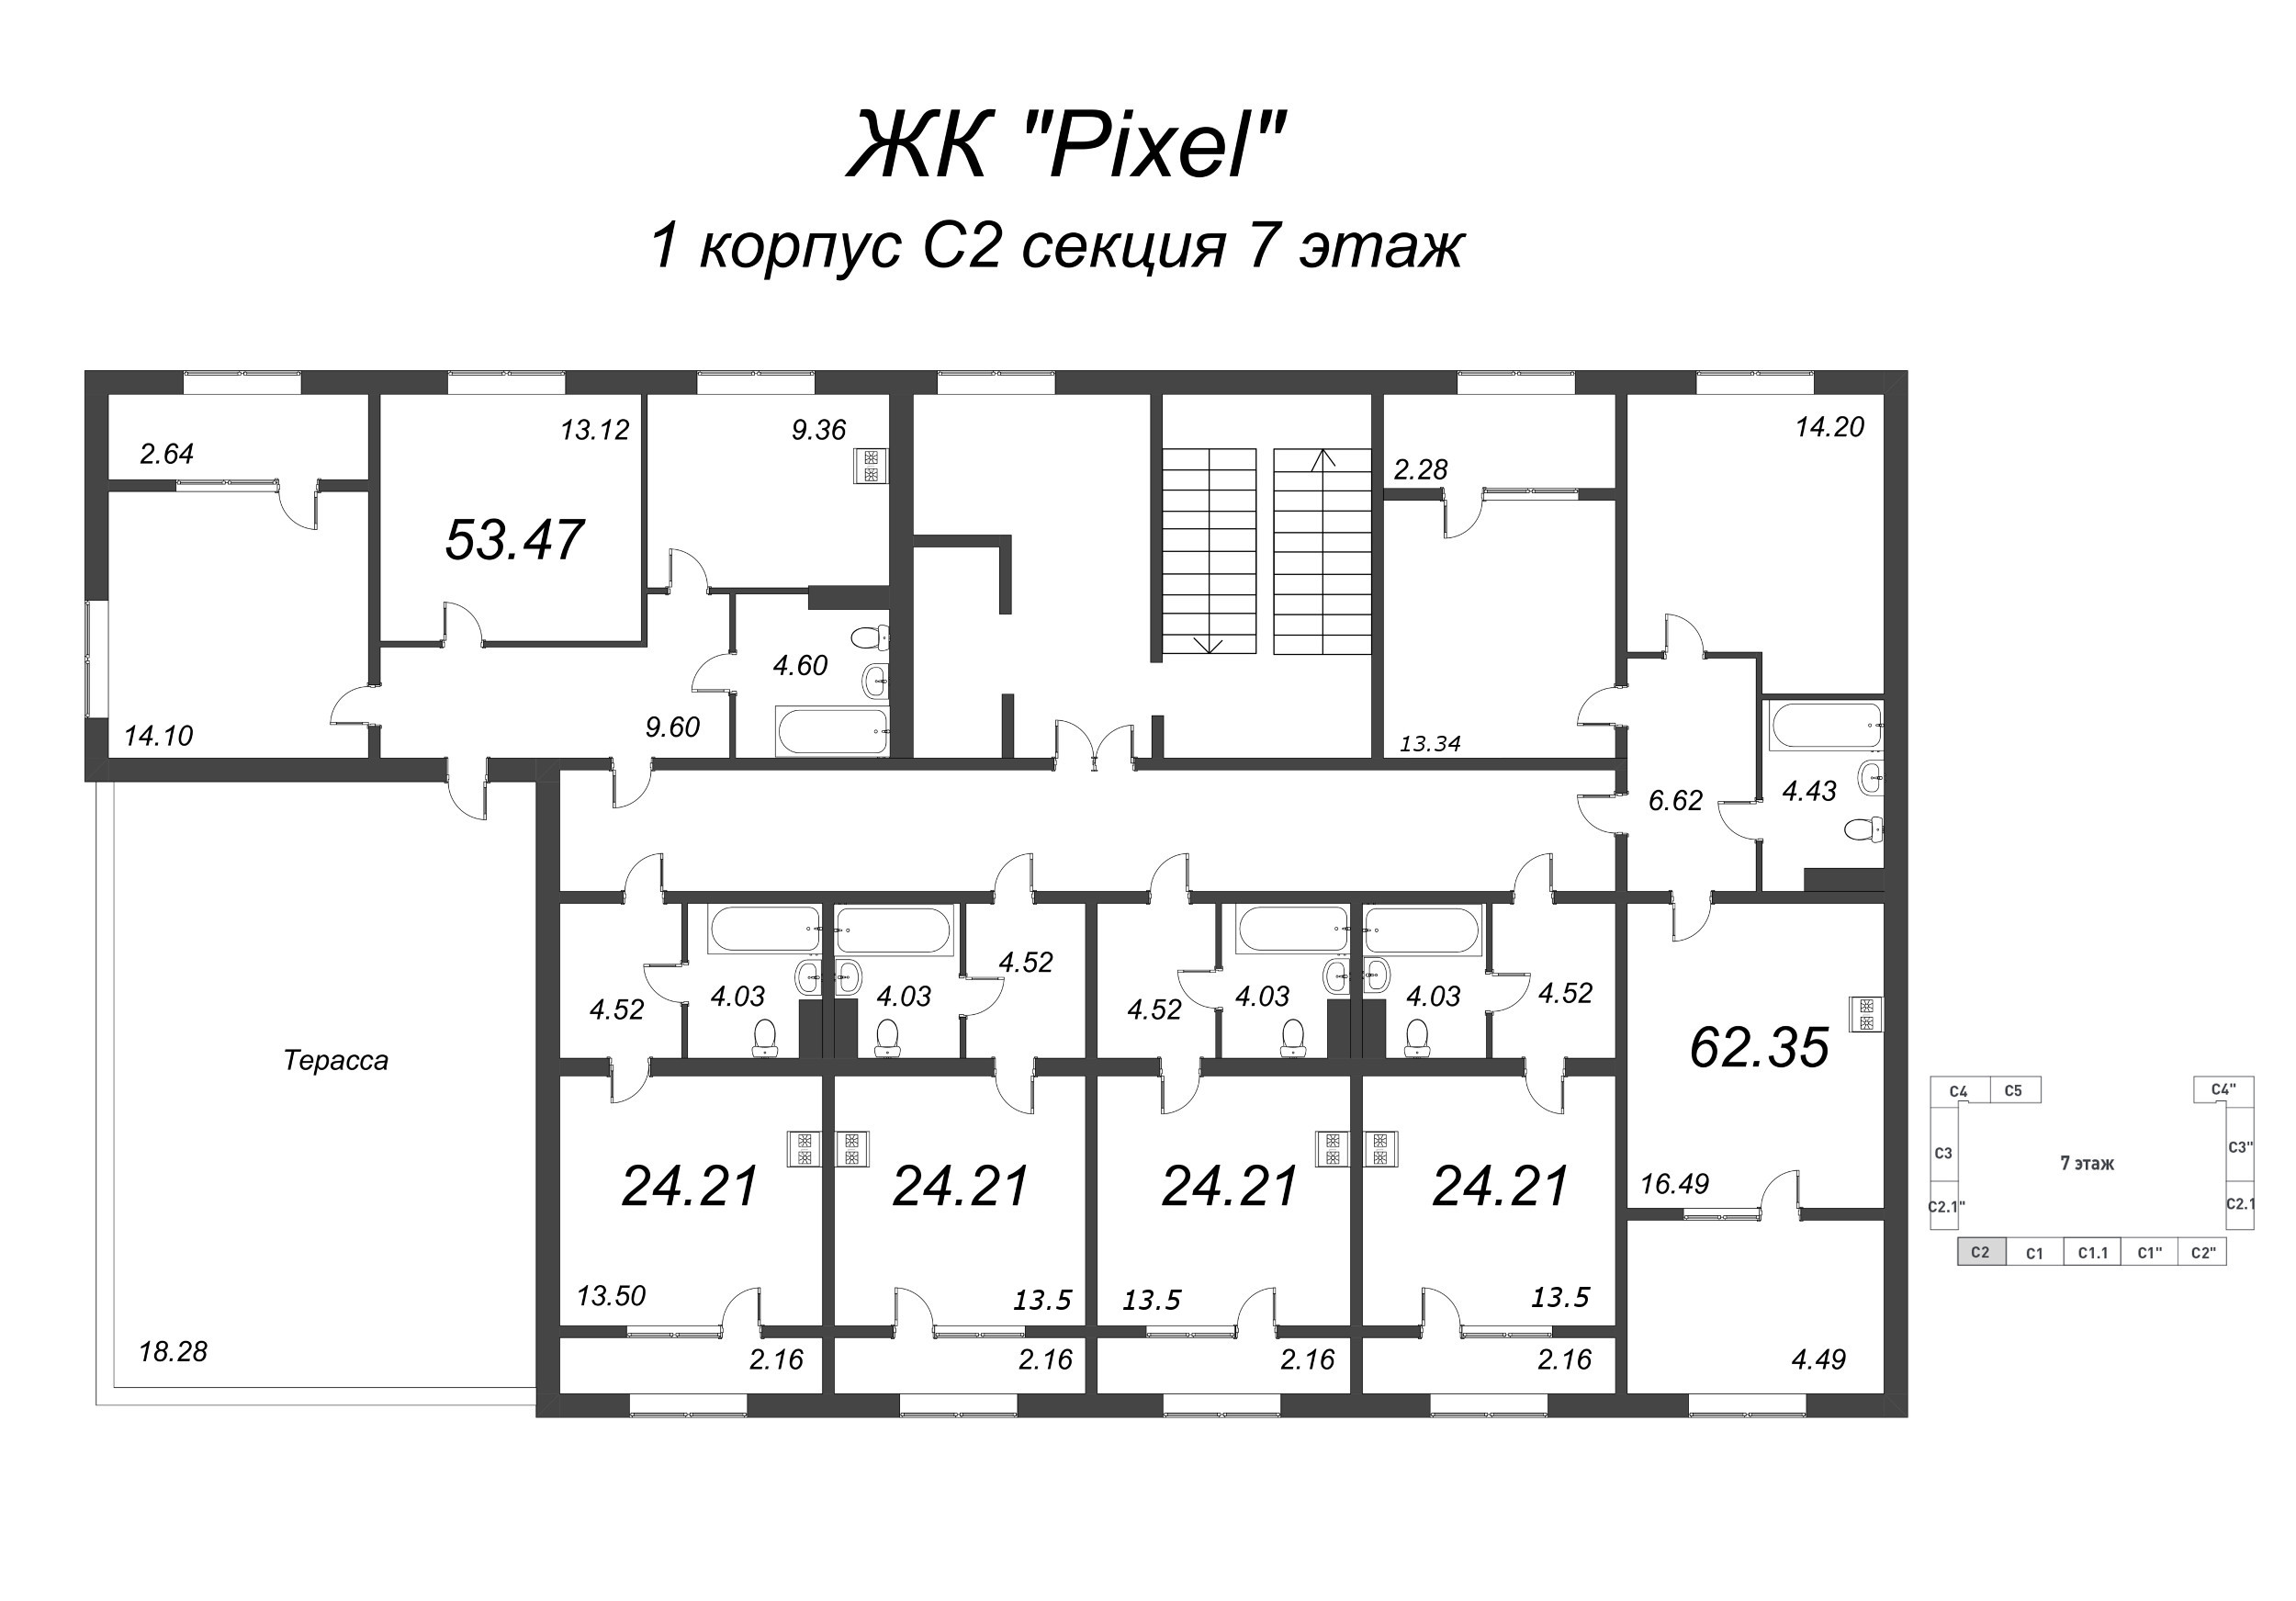 2-комнатная квартира, 62.35 м² в ЖК "Pixel" - планировка этажа